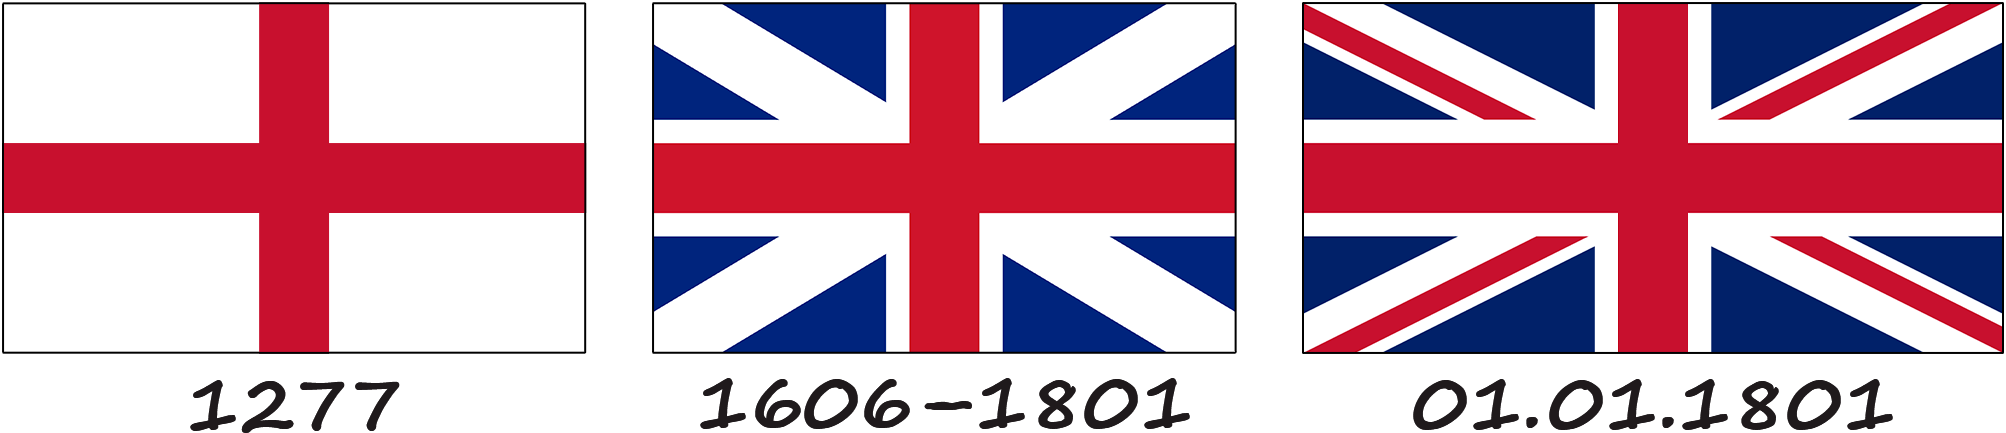 Histoire du drapeau du Royaume-Uni